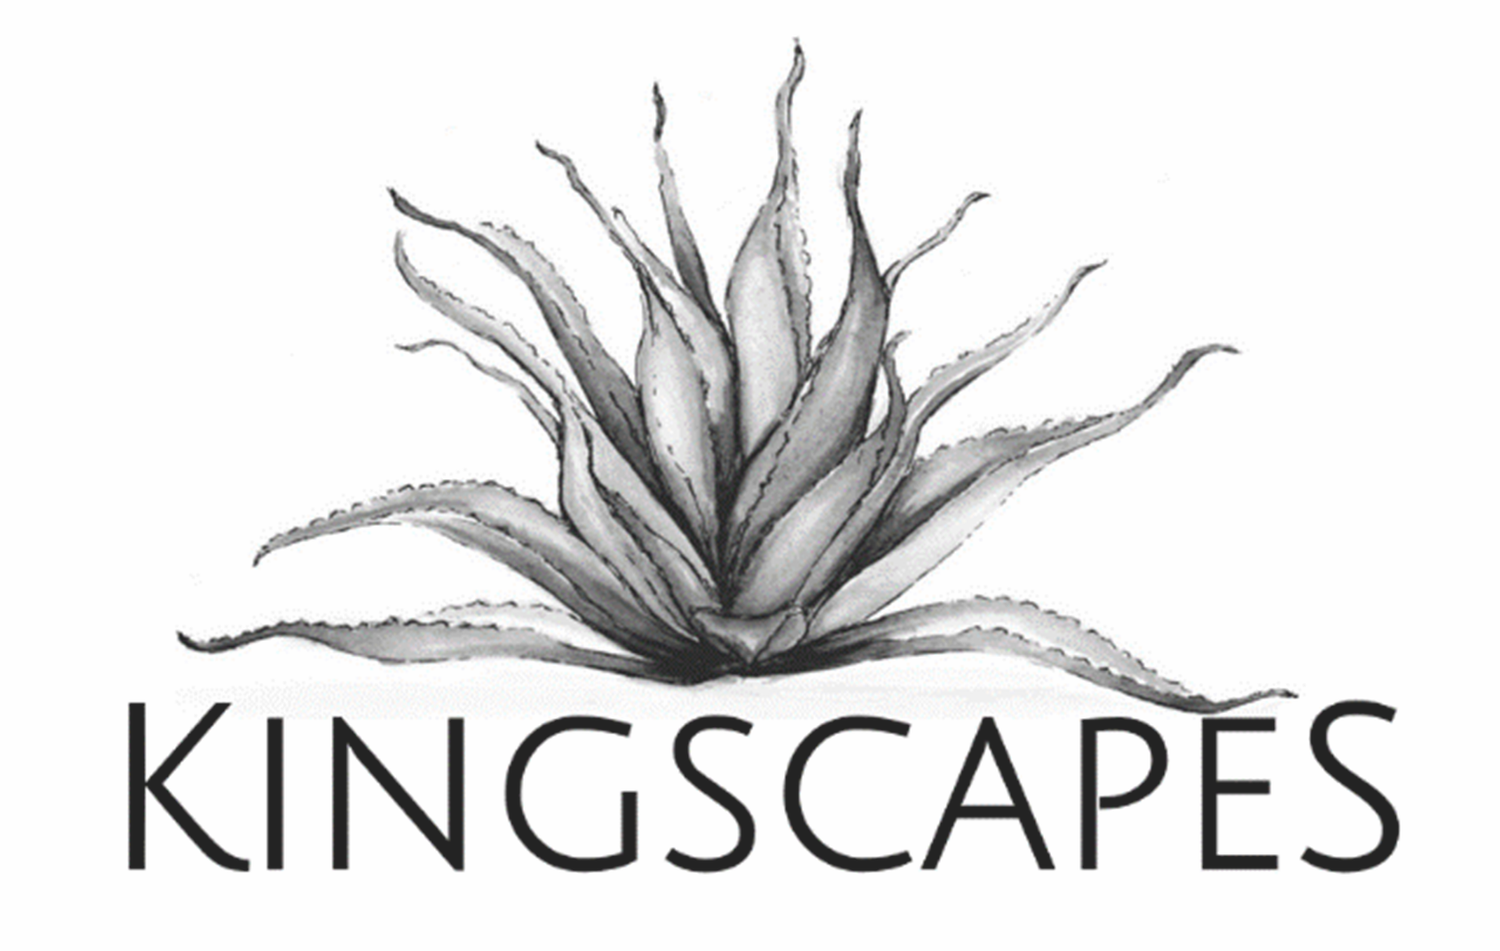 Kingscapes.com